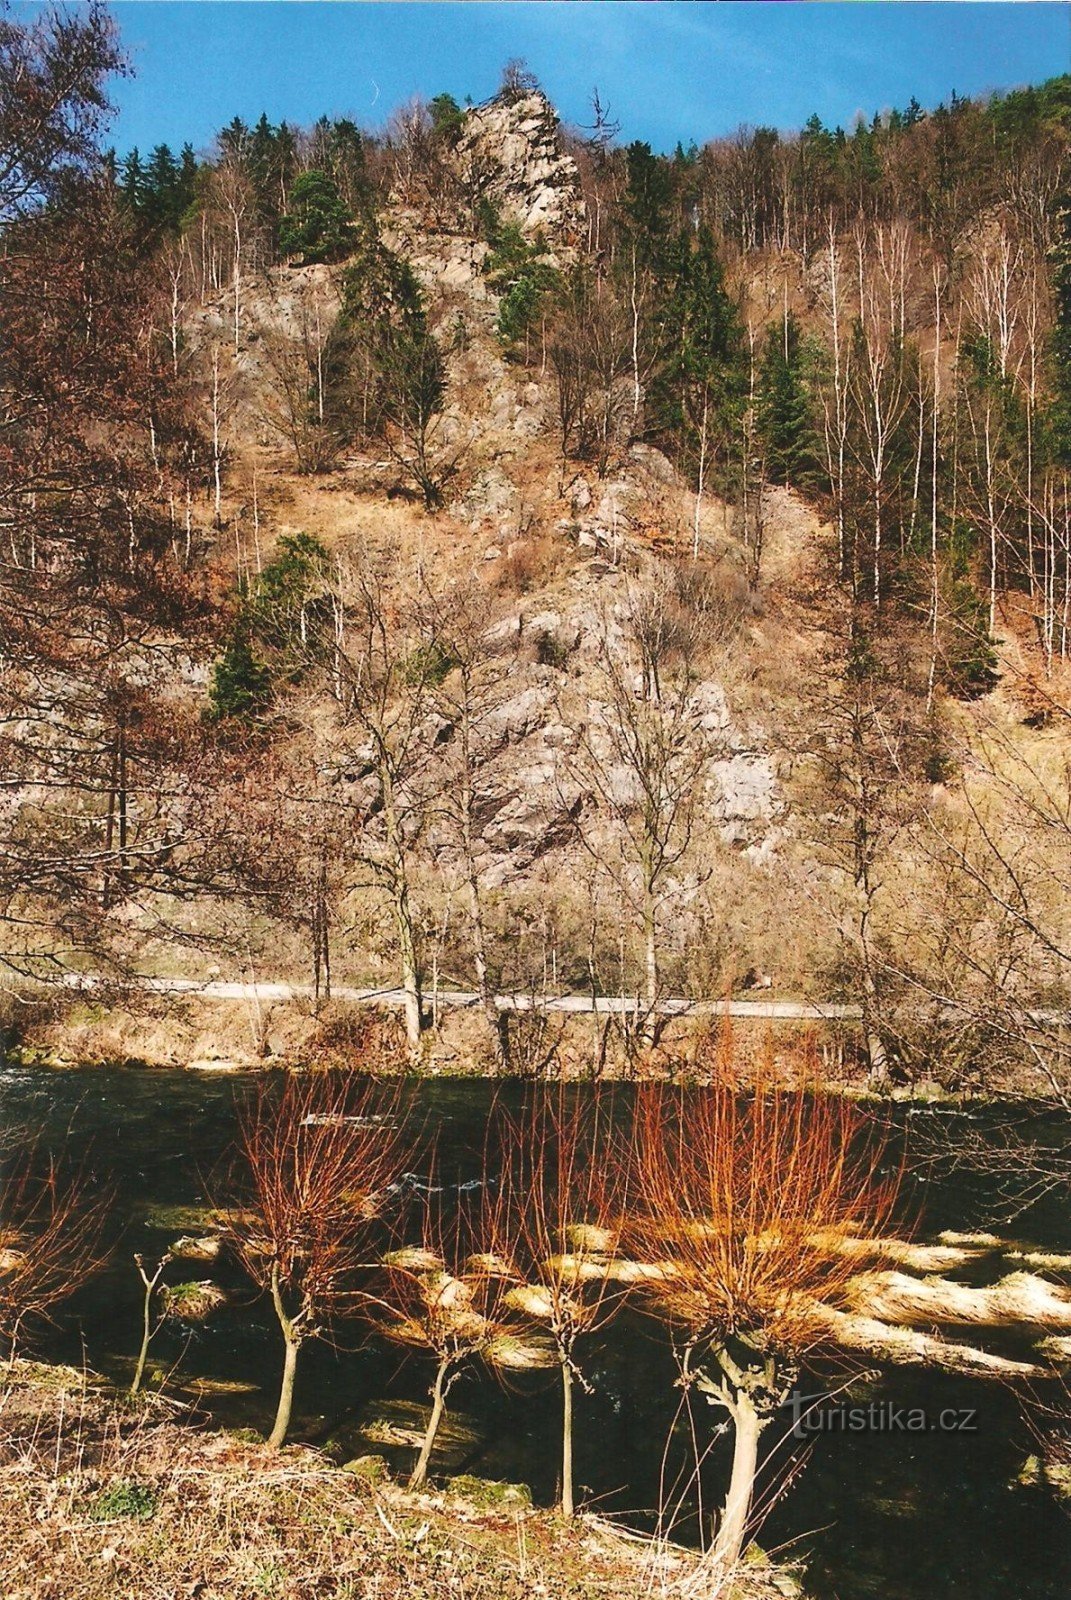 Grădina de stânci Vírská - punctul de belvedere Klubačice